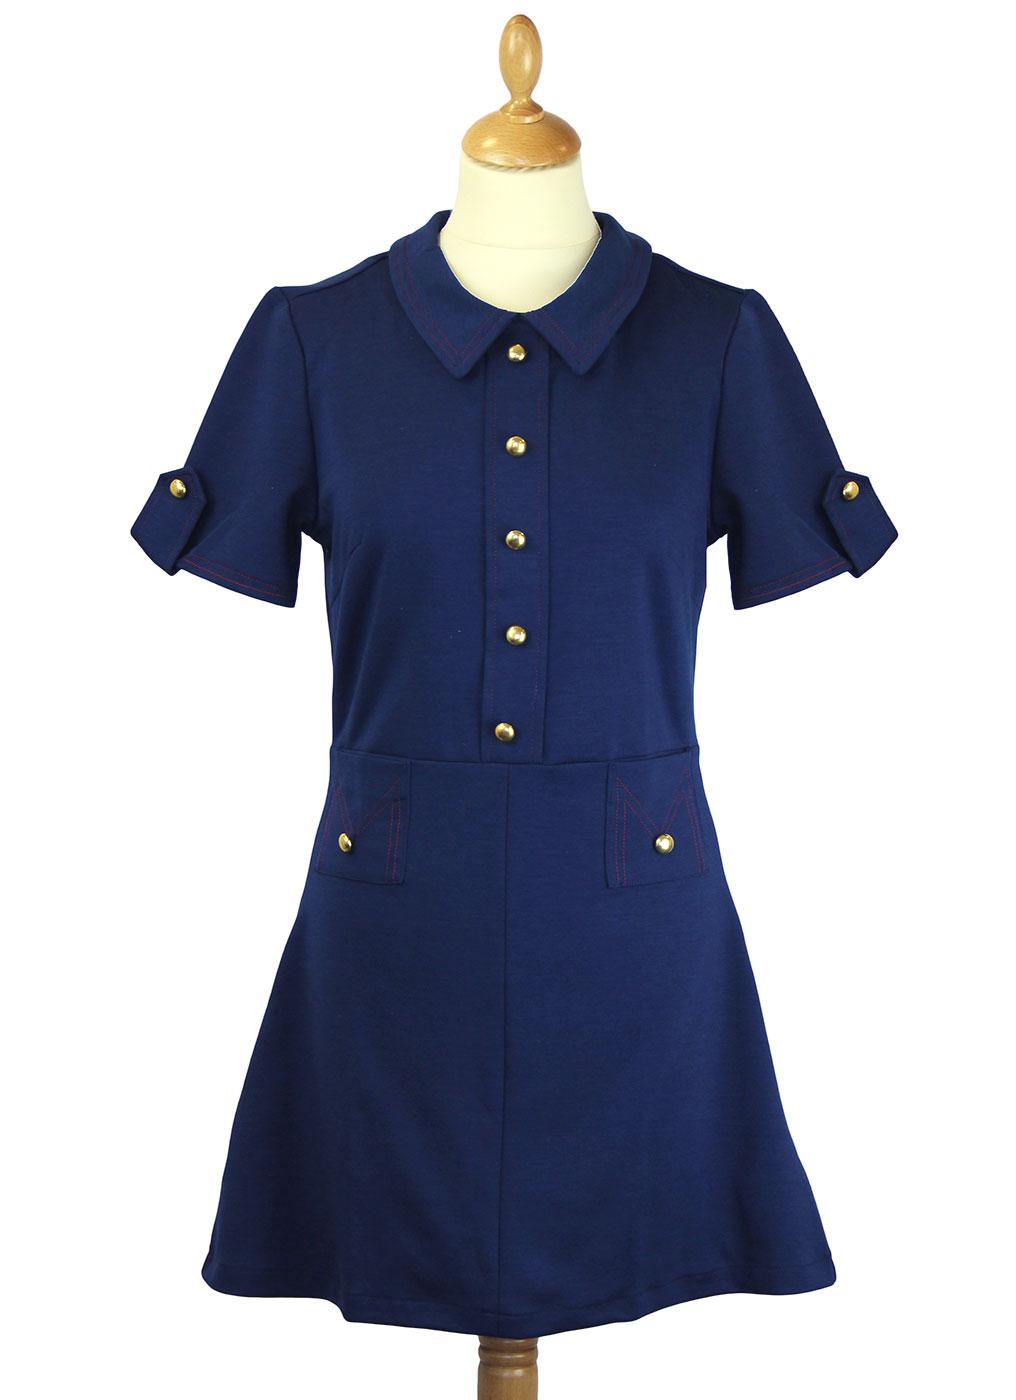 Josie Retro 1960s Mod Polo Dress in Navy